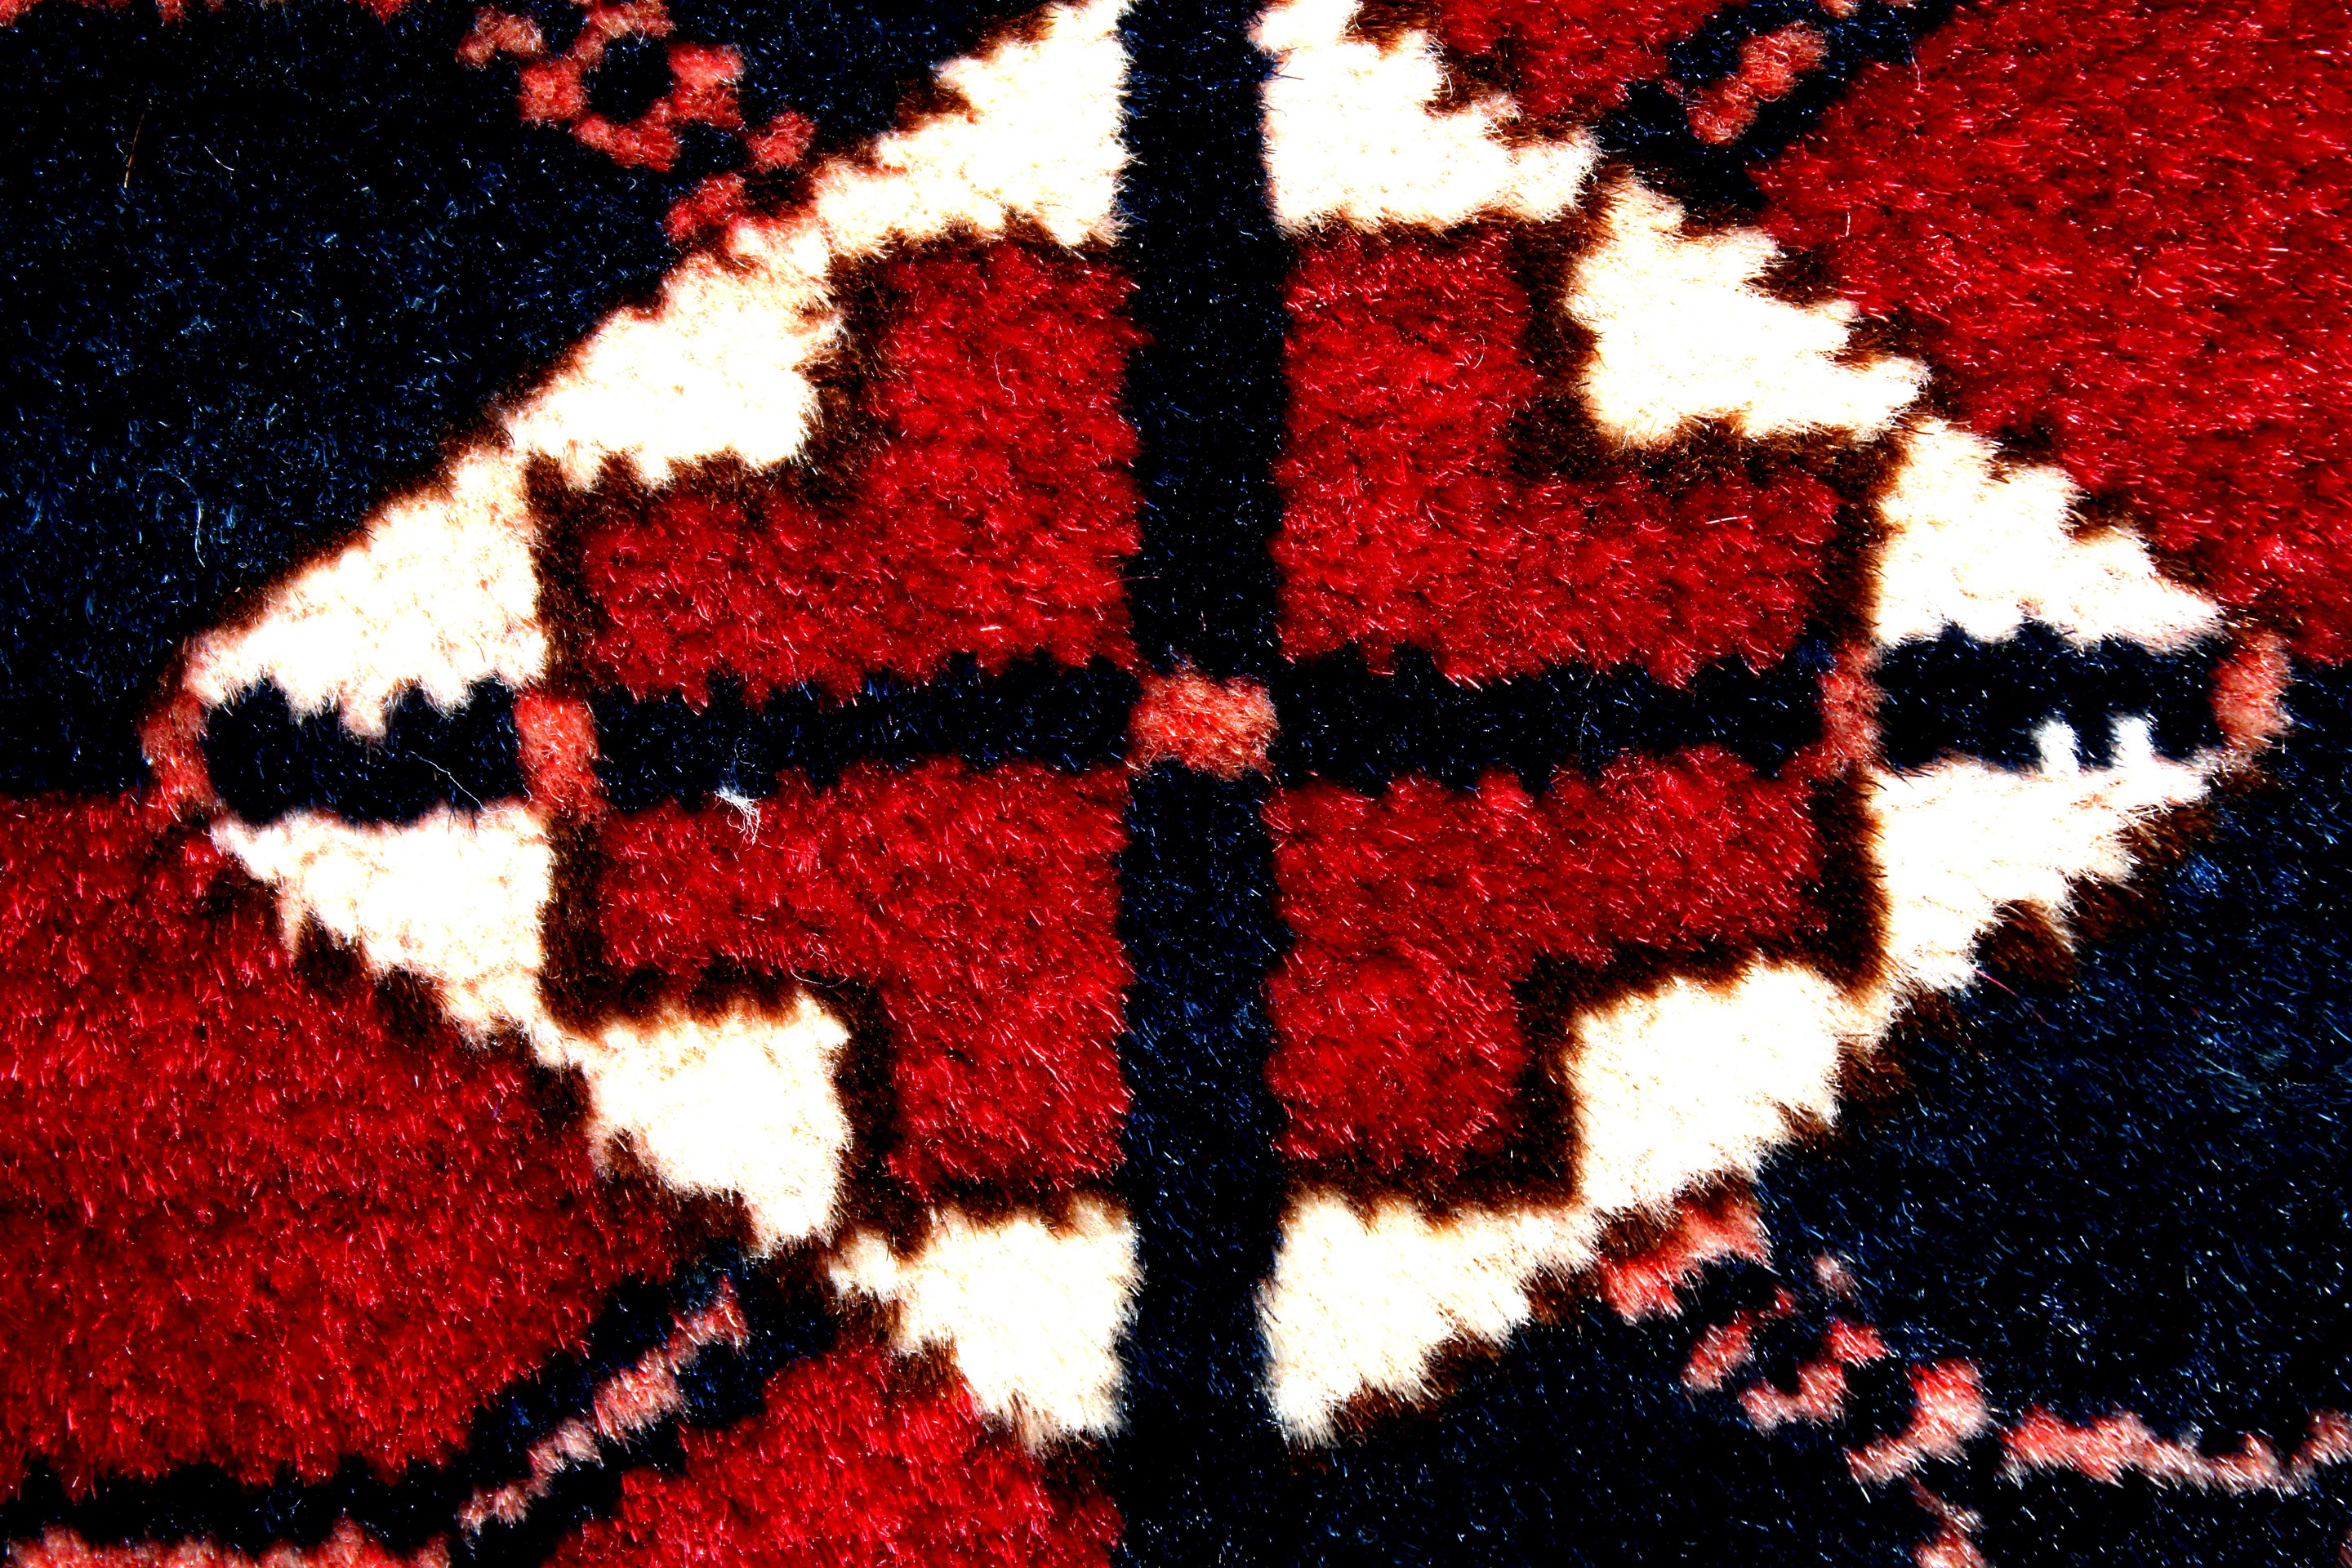 Akhal Teke Türkmen Main carpet 